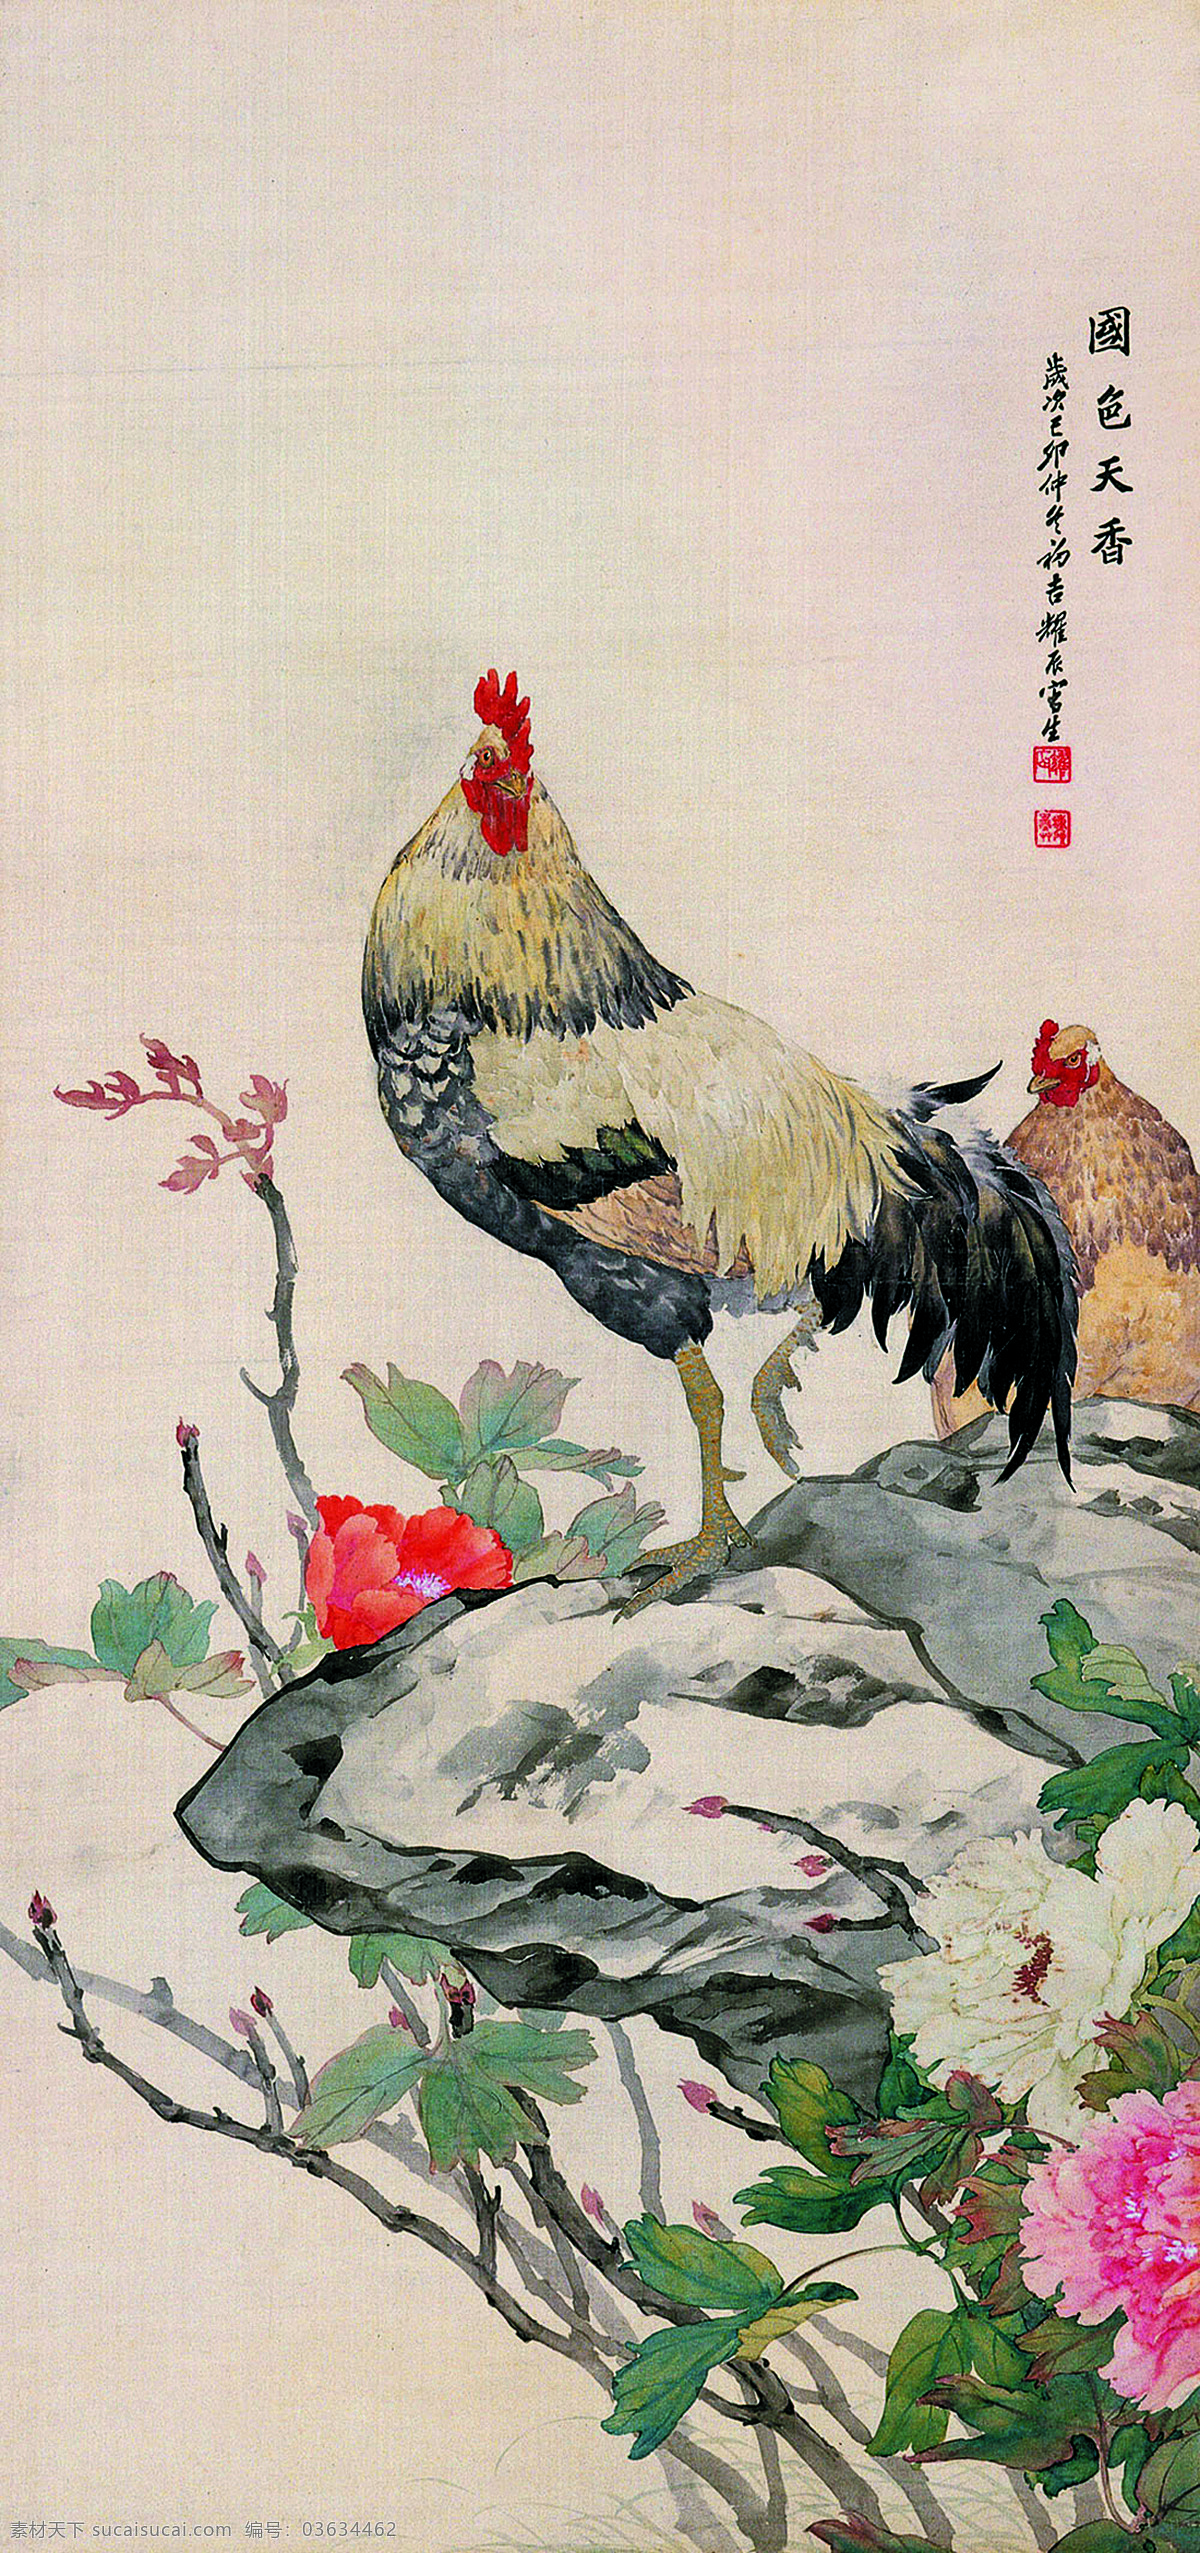 彩墨画 公鸡 国画艺术 国色天香 绘画书法 美术 母鸡 牡丹国画 设计素材 模板下载 中国画 牡丹花 文化艺术